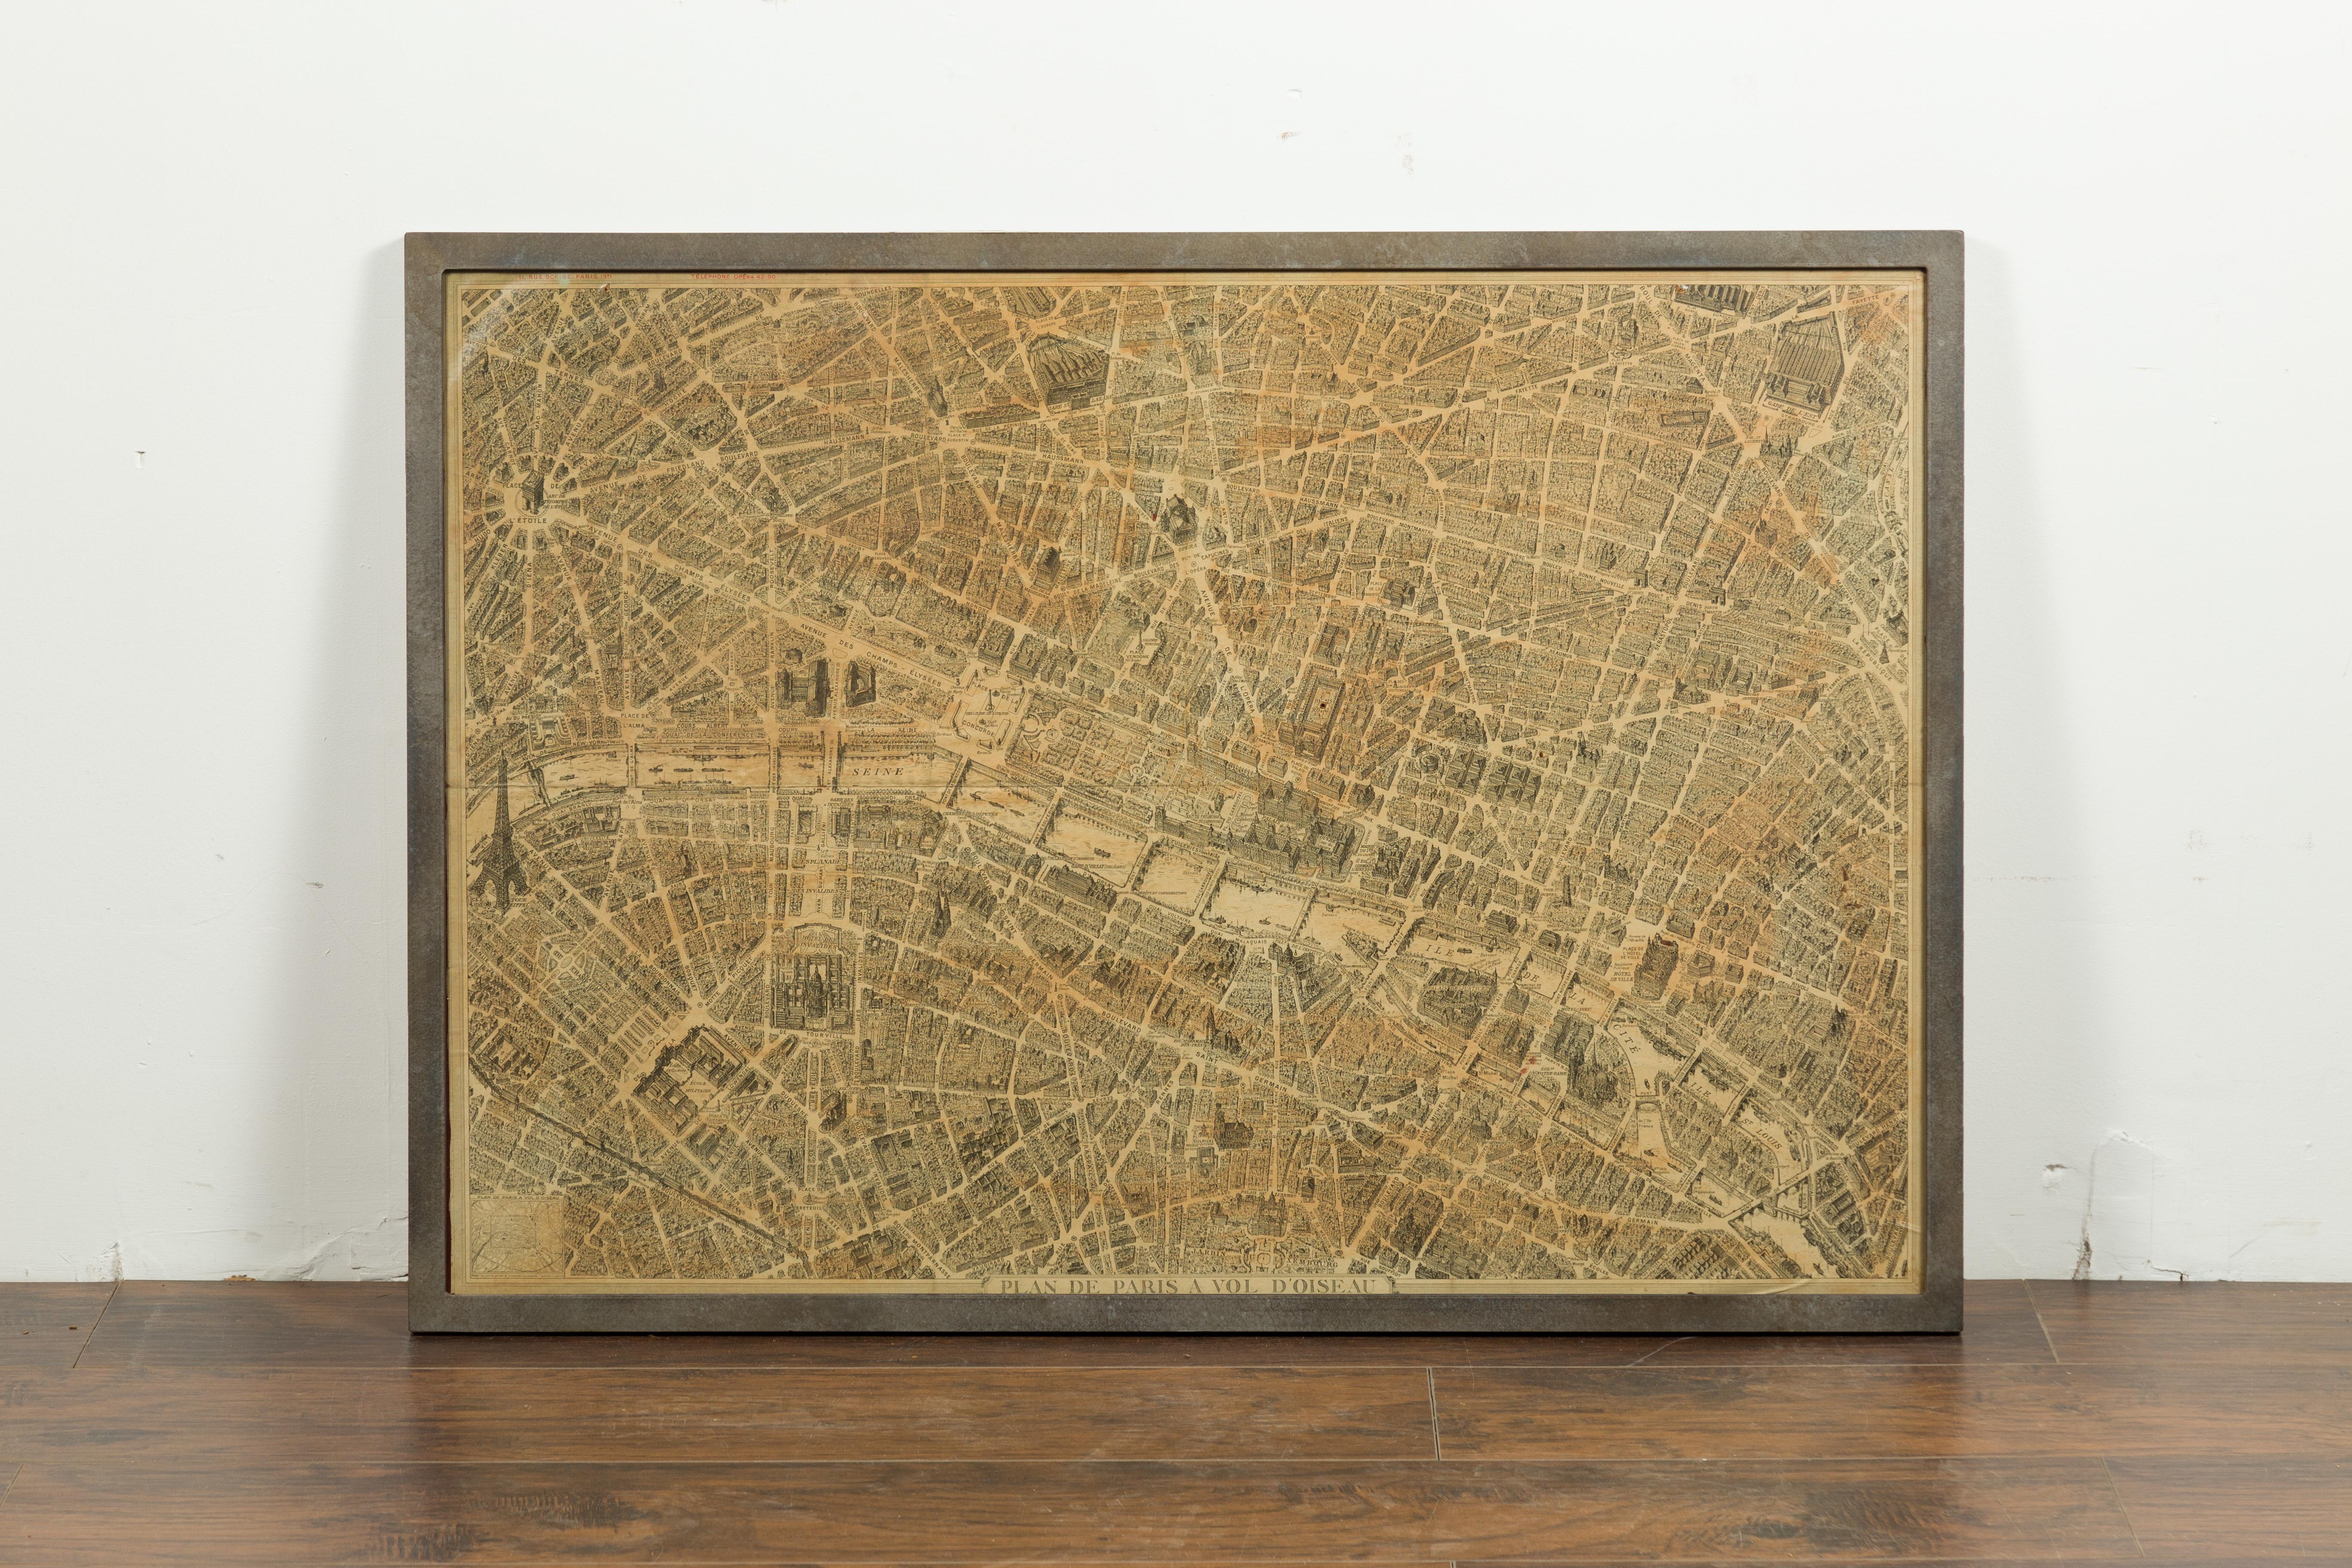 Ein französischer Stadtplan von Paris aus dem frühen 20. Jahrhundert, mit individuellem Eisenrahmen. Diese im zweiten Viertel des 20. Jahrhunderts in Paris entstandene Karte von Paris à vol d'oiseau (wie die Krähe fliegt) zeigt die Stadt der